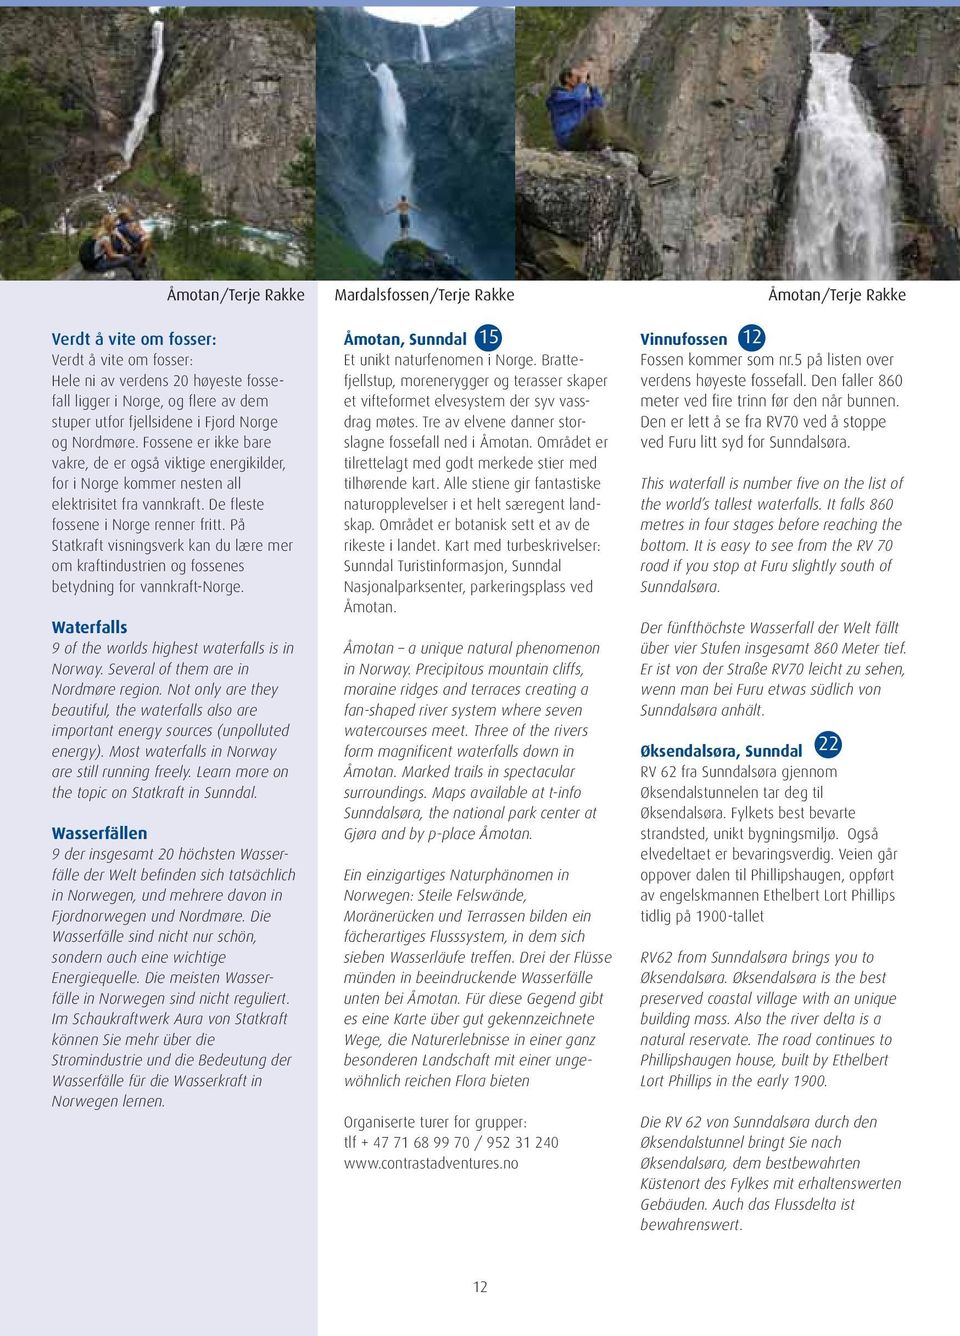 På Statkraft visningsverk kan du lære mer om kraftindustrien og fossenes betydning for vannkraft-norge. Waterfalls 9 of the worlds highest waterfalls is in Norway.